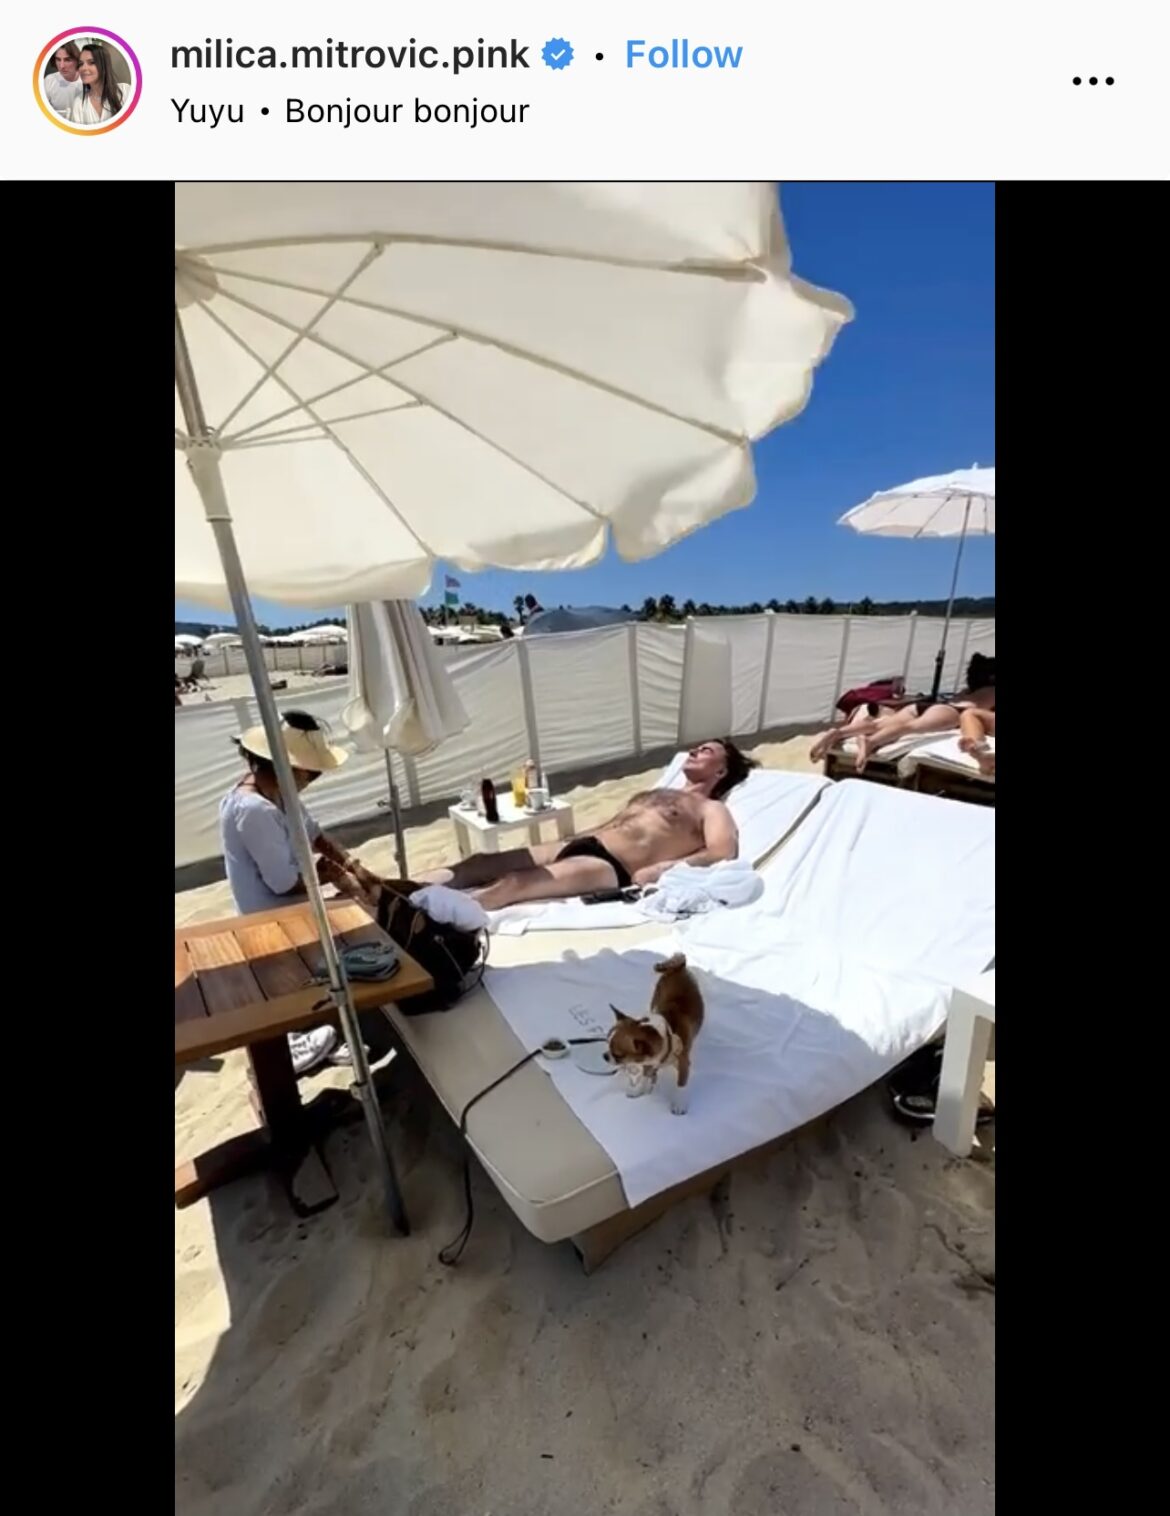 ŽELJKA MITROVIĆA MASIRAJU NA PLAŽI Milica objavila hit snimak muža, leži u kupaćem na Azurnoj obali i ovako se relaksira (VIDEO)